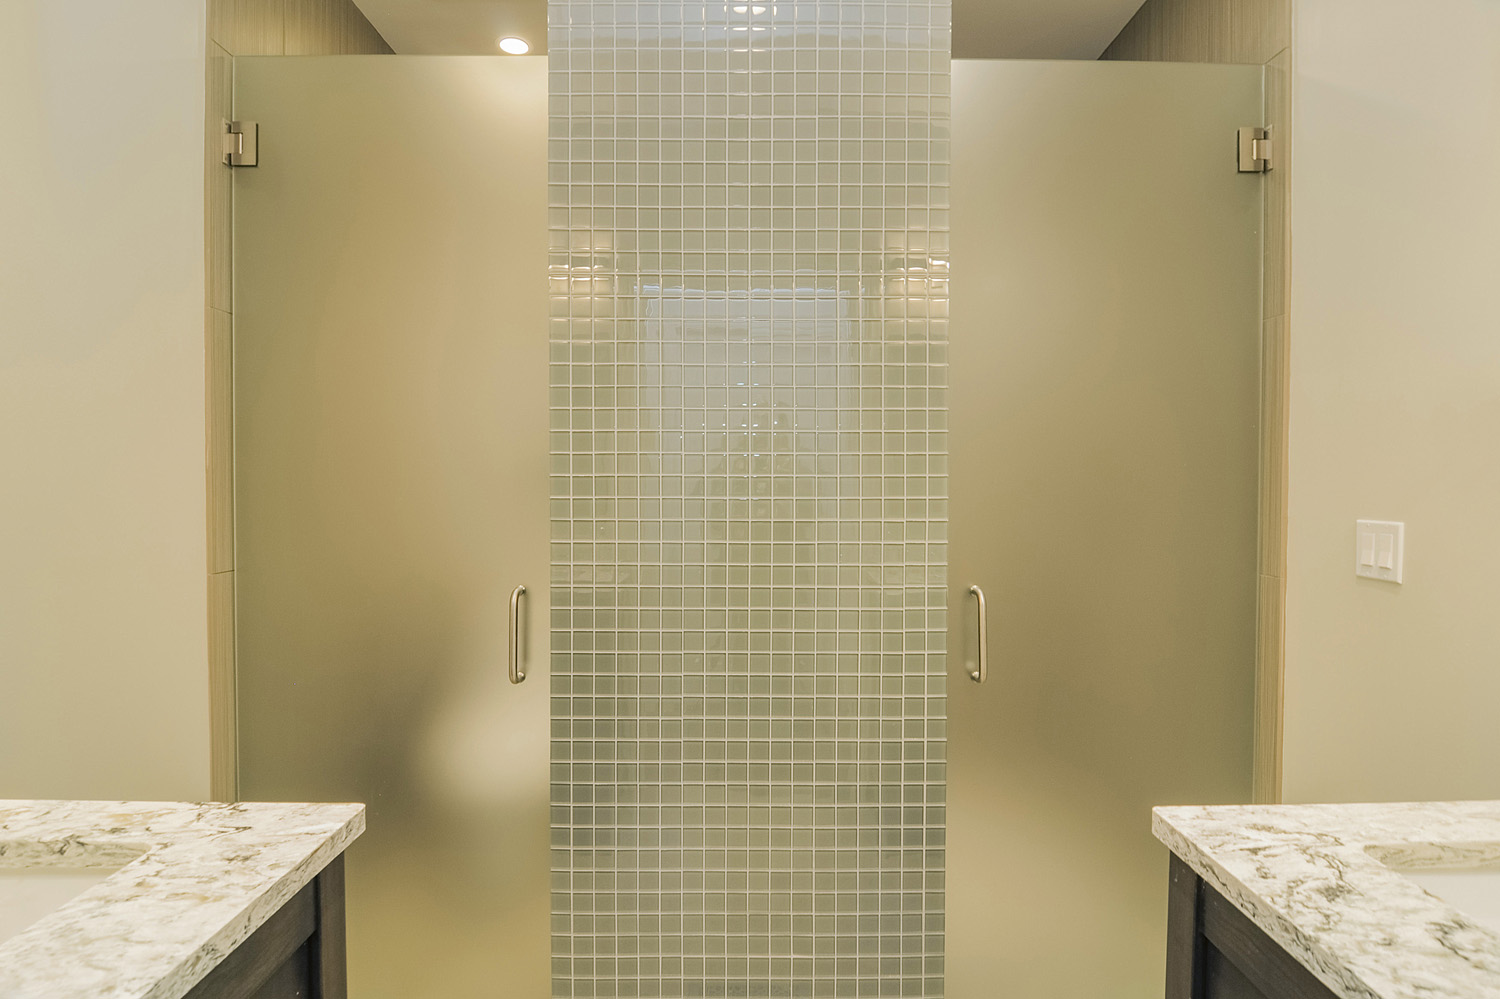 Bathroom Remodeling Tile Cabinet Granite Quartz Ideas Naperville Aurora North Aurora Sebring Design Build